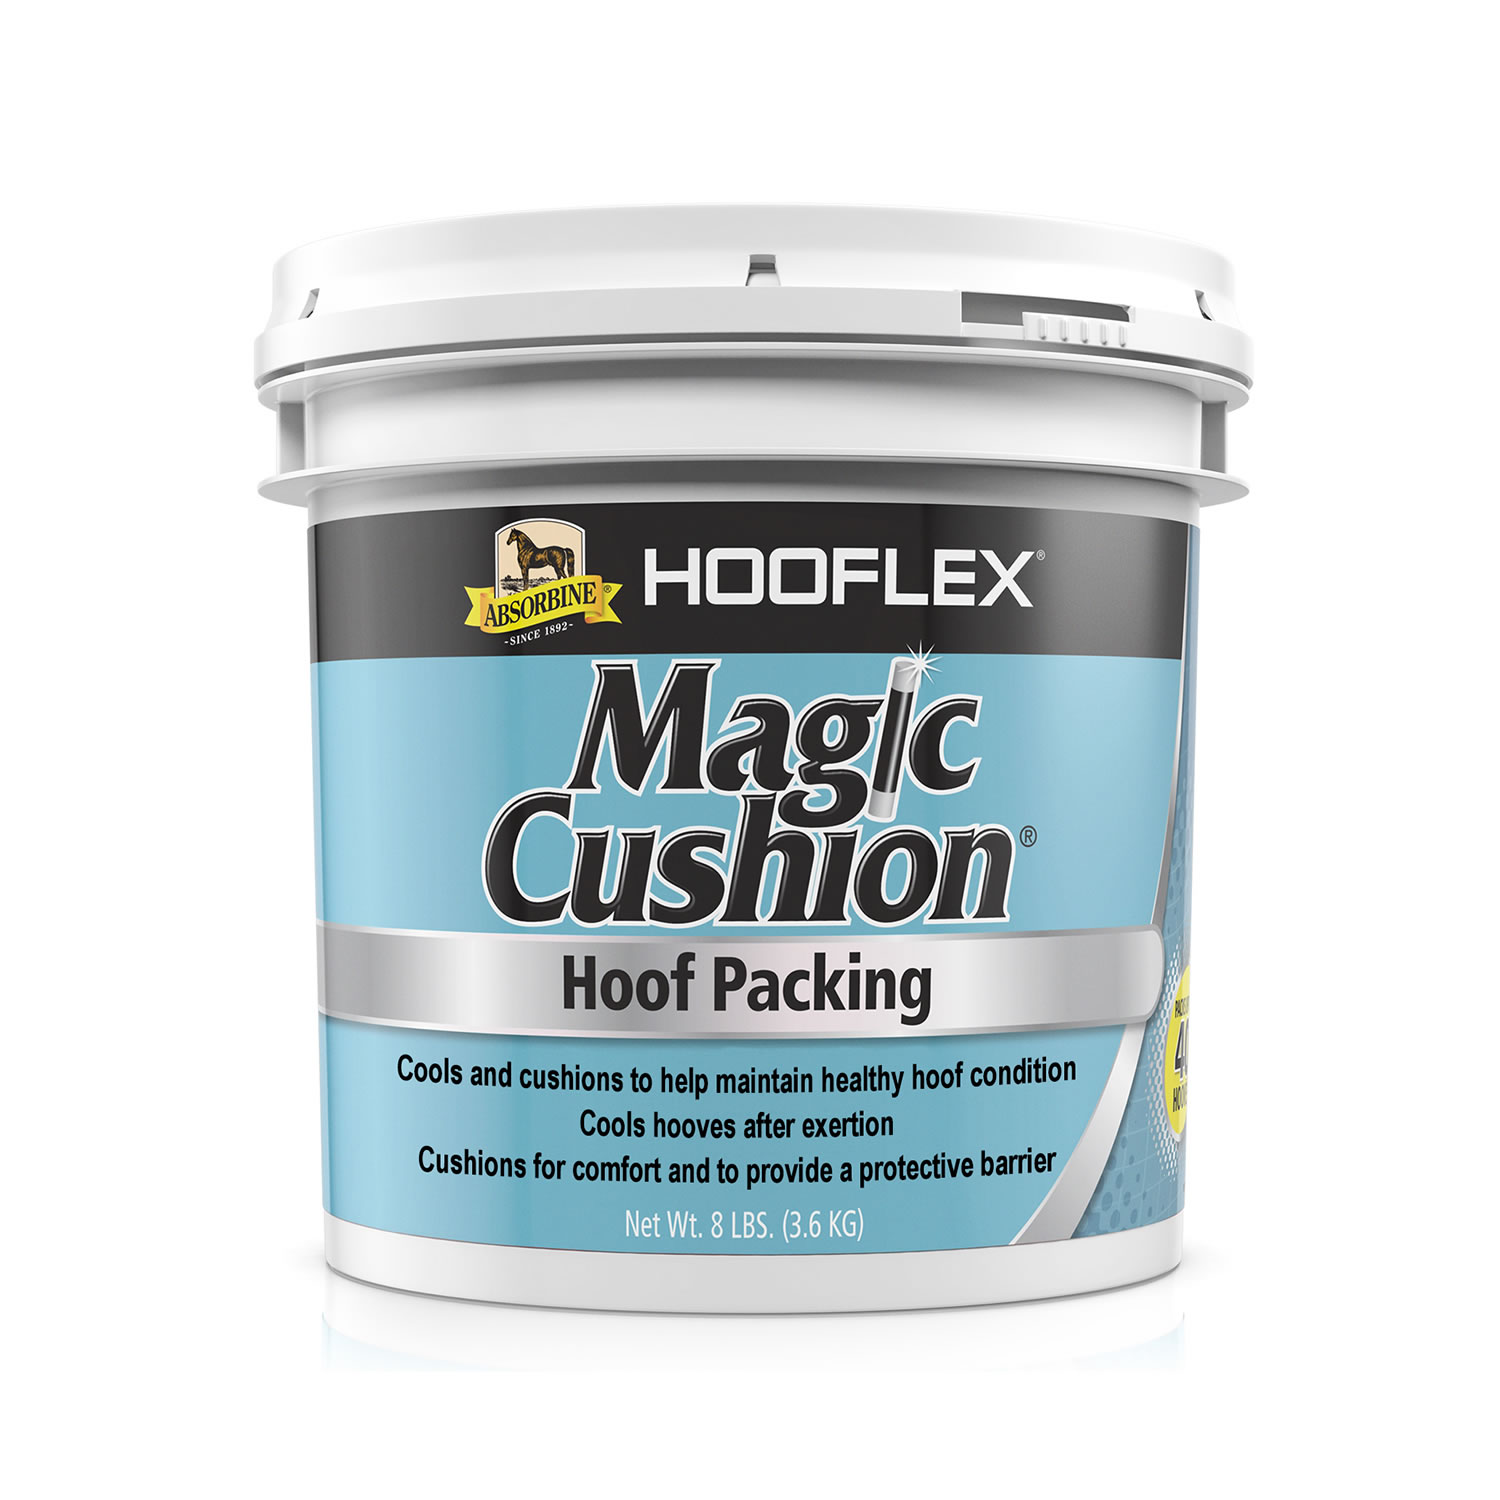 ABSORBINE HOOFLEX MAGIC CUSHION ABSORBINE HOOFLEX MAGIC CUSHION 3.6 KG  3.6 KG